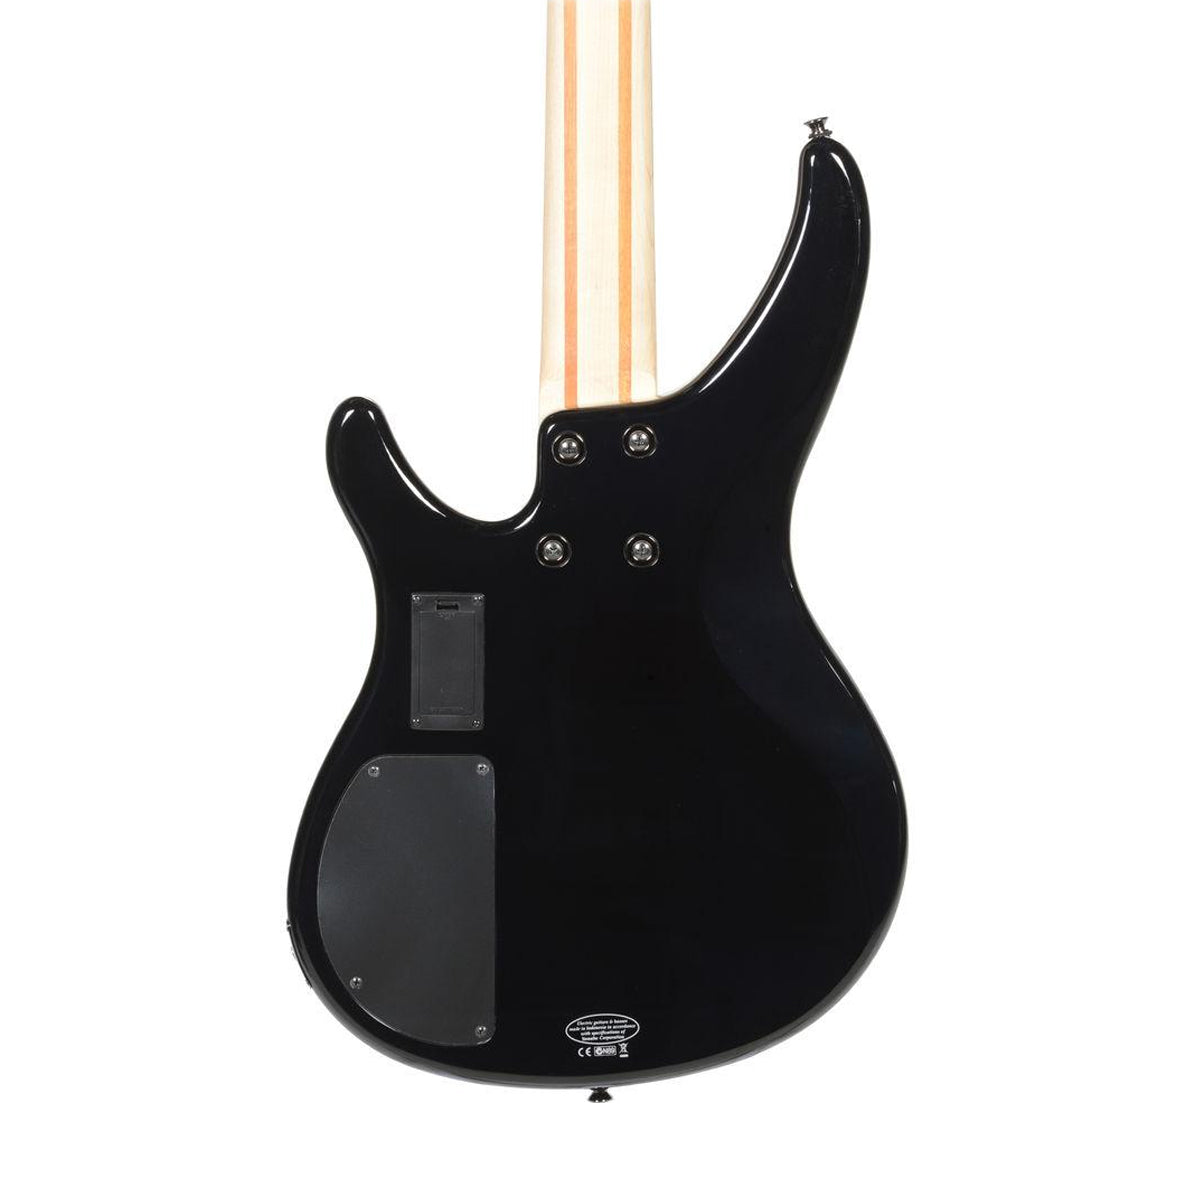 Yamaha TRBX304 Electric Bass Guitar - Black